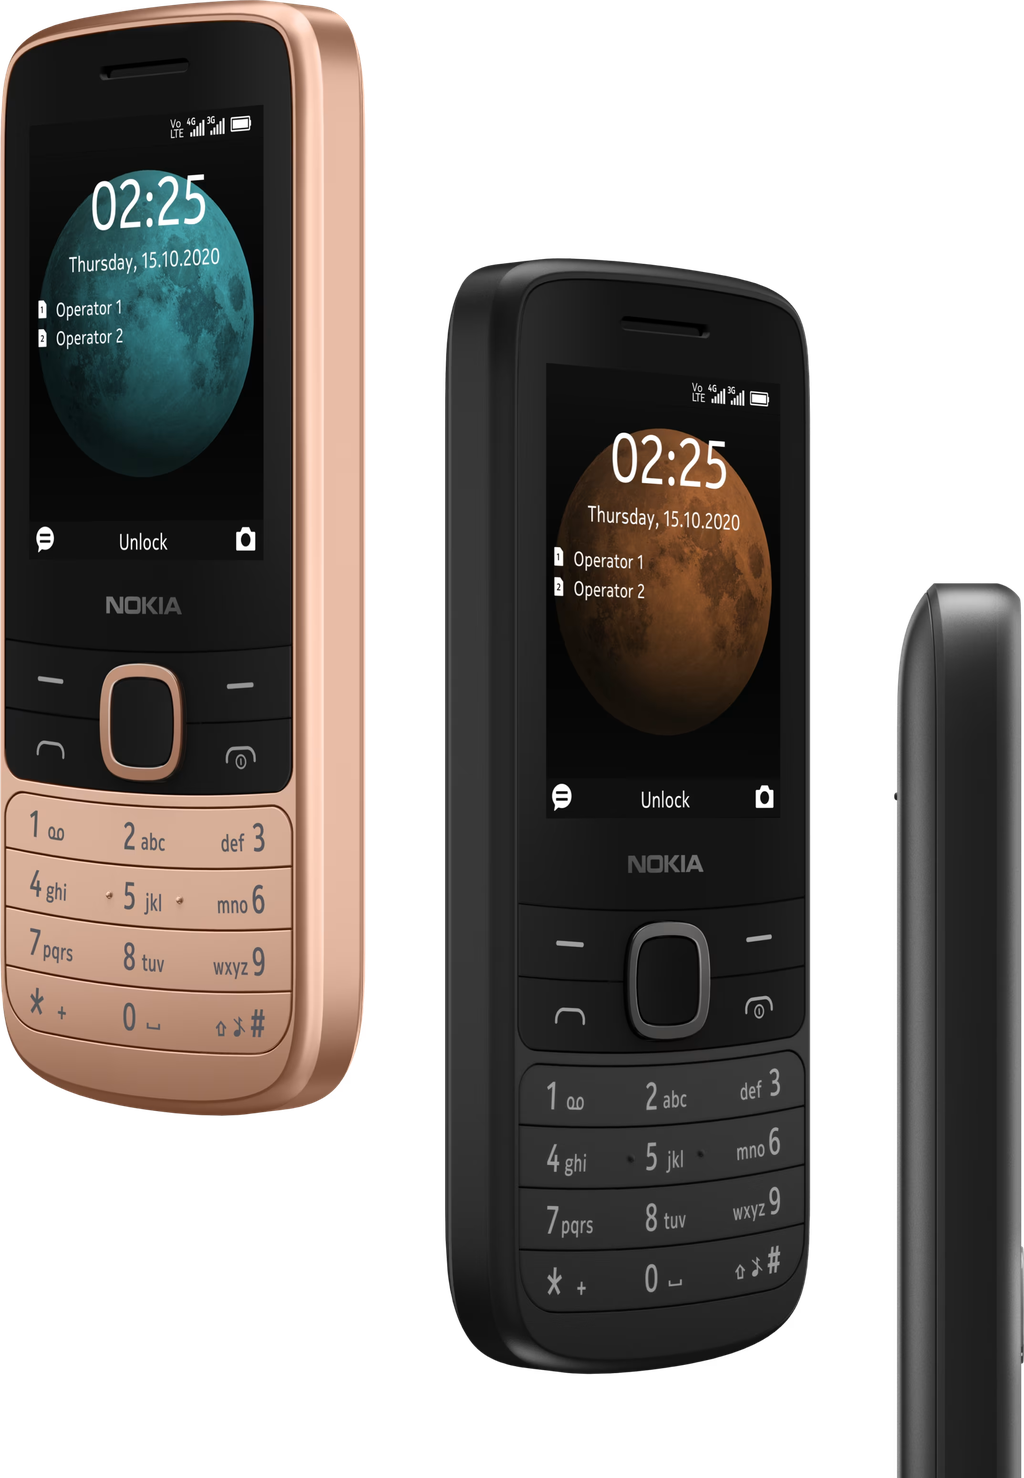 Novo Nokia 225 deve ter linhas mais retas que modelo atual (Imagem: Divulgação/Nokia)